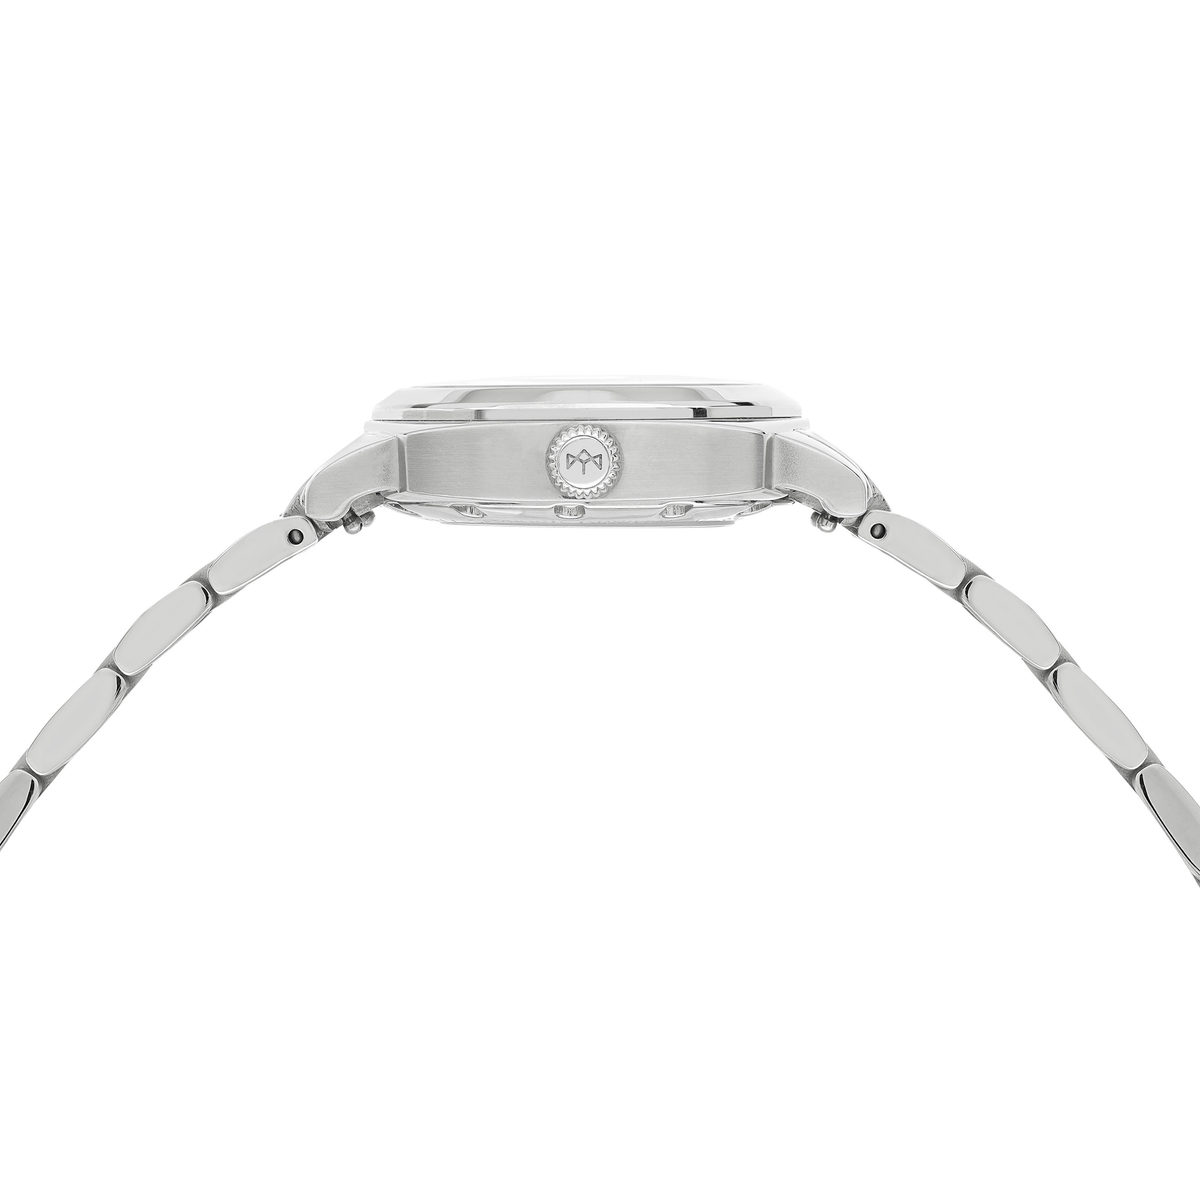 Montre MATY GM automatique cadran blanc bracelet acier - vue 2